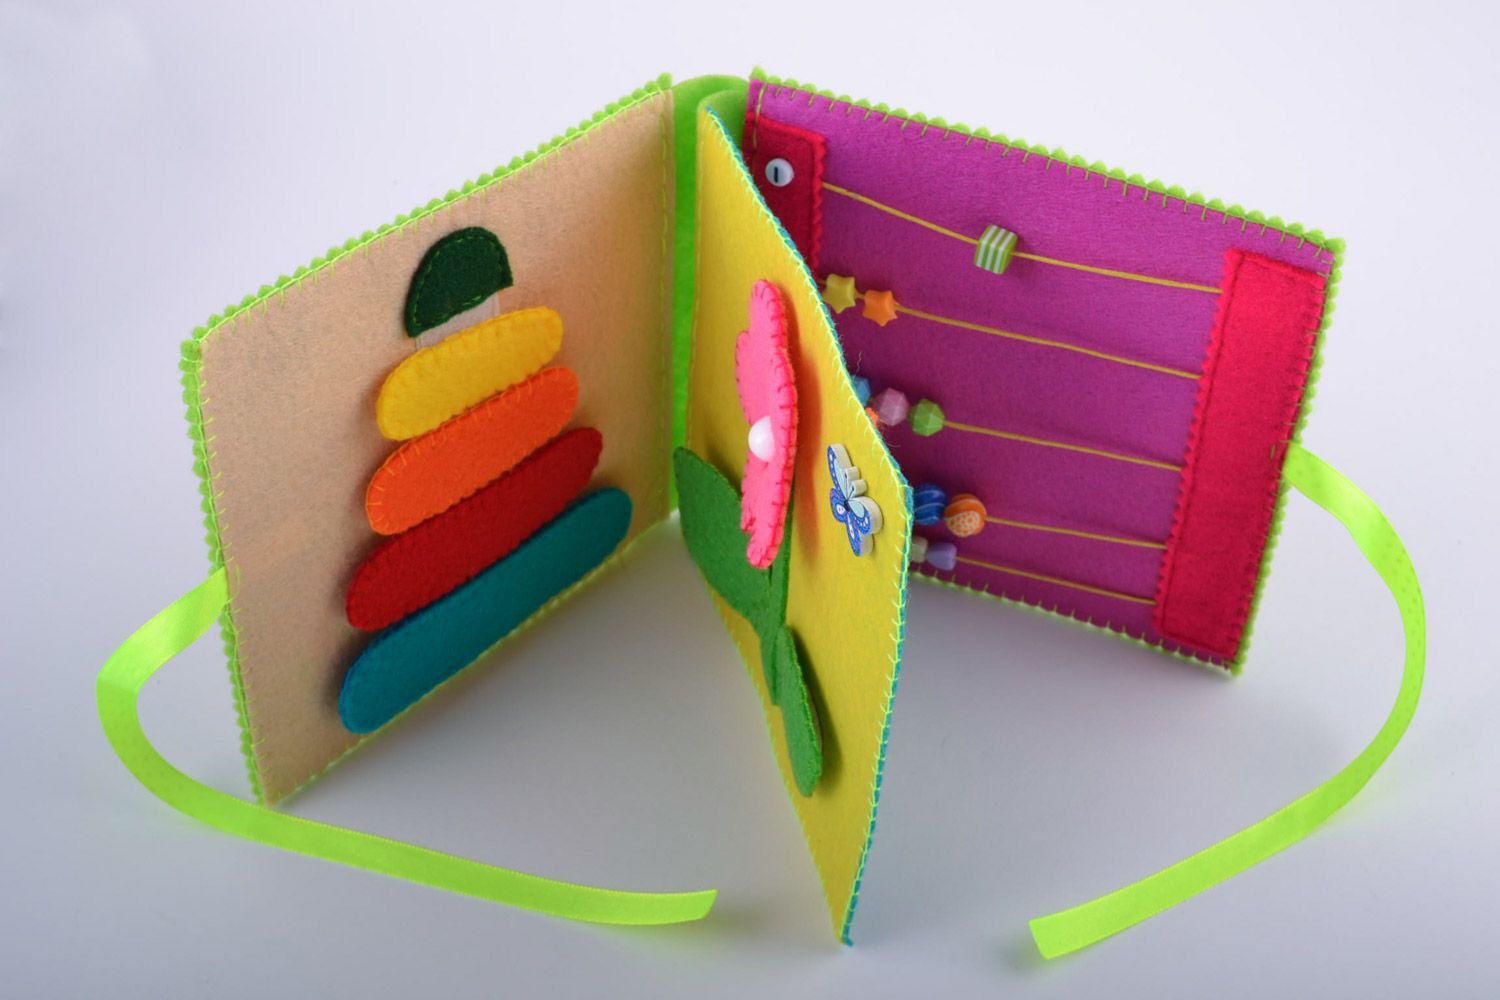 Полезная игрушка: как сшить развивающую книжку из фетра своими руками? все подробно о ее создании